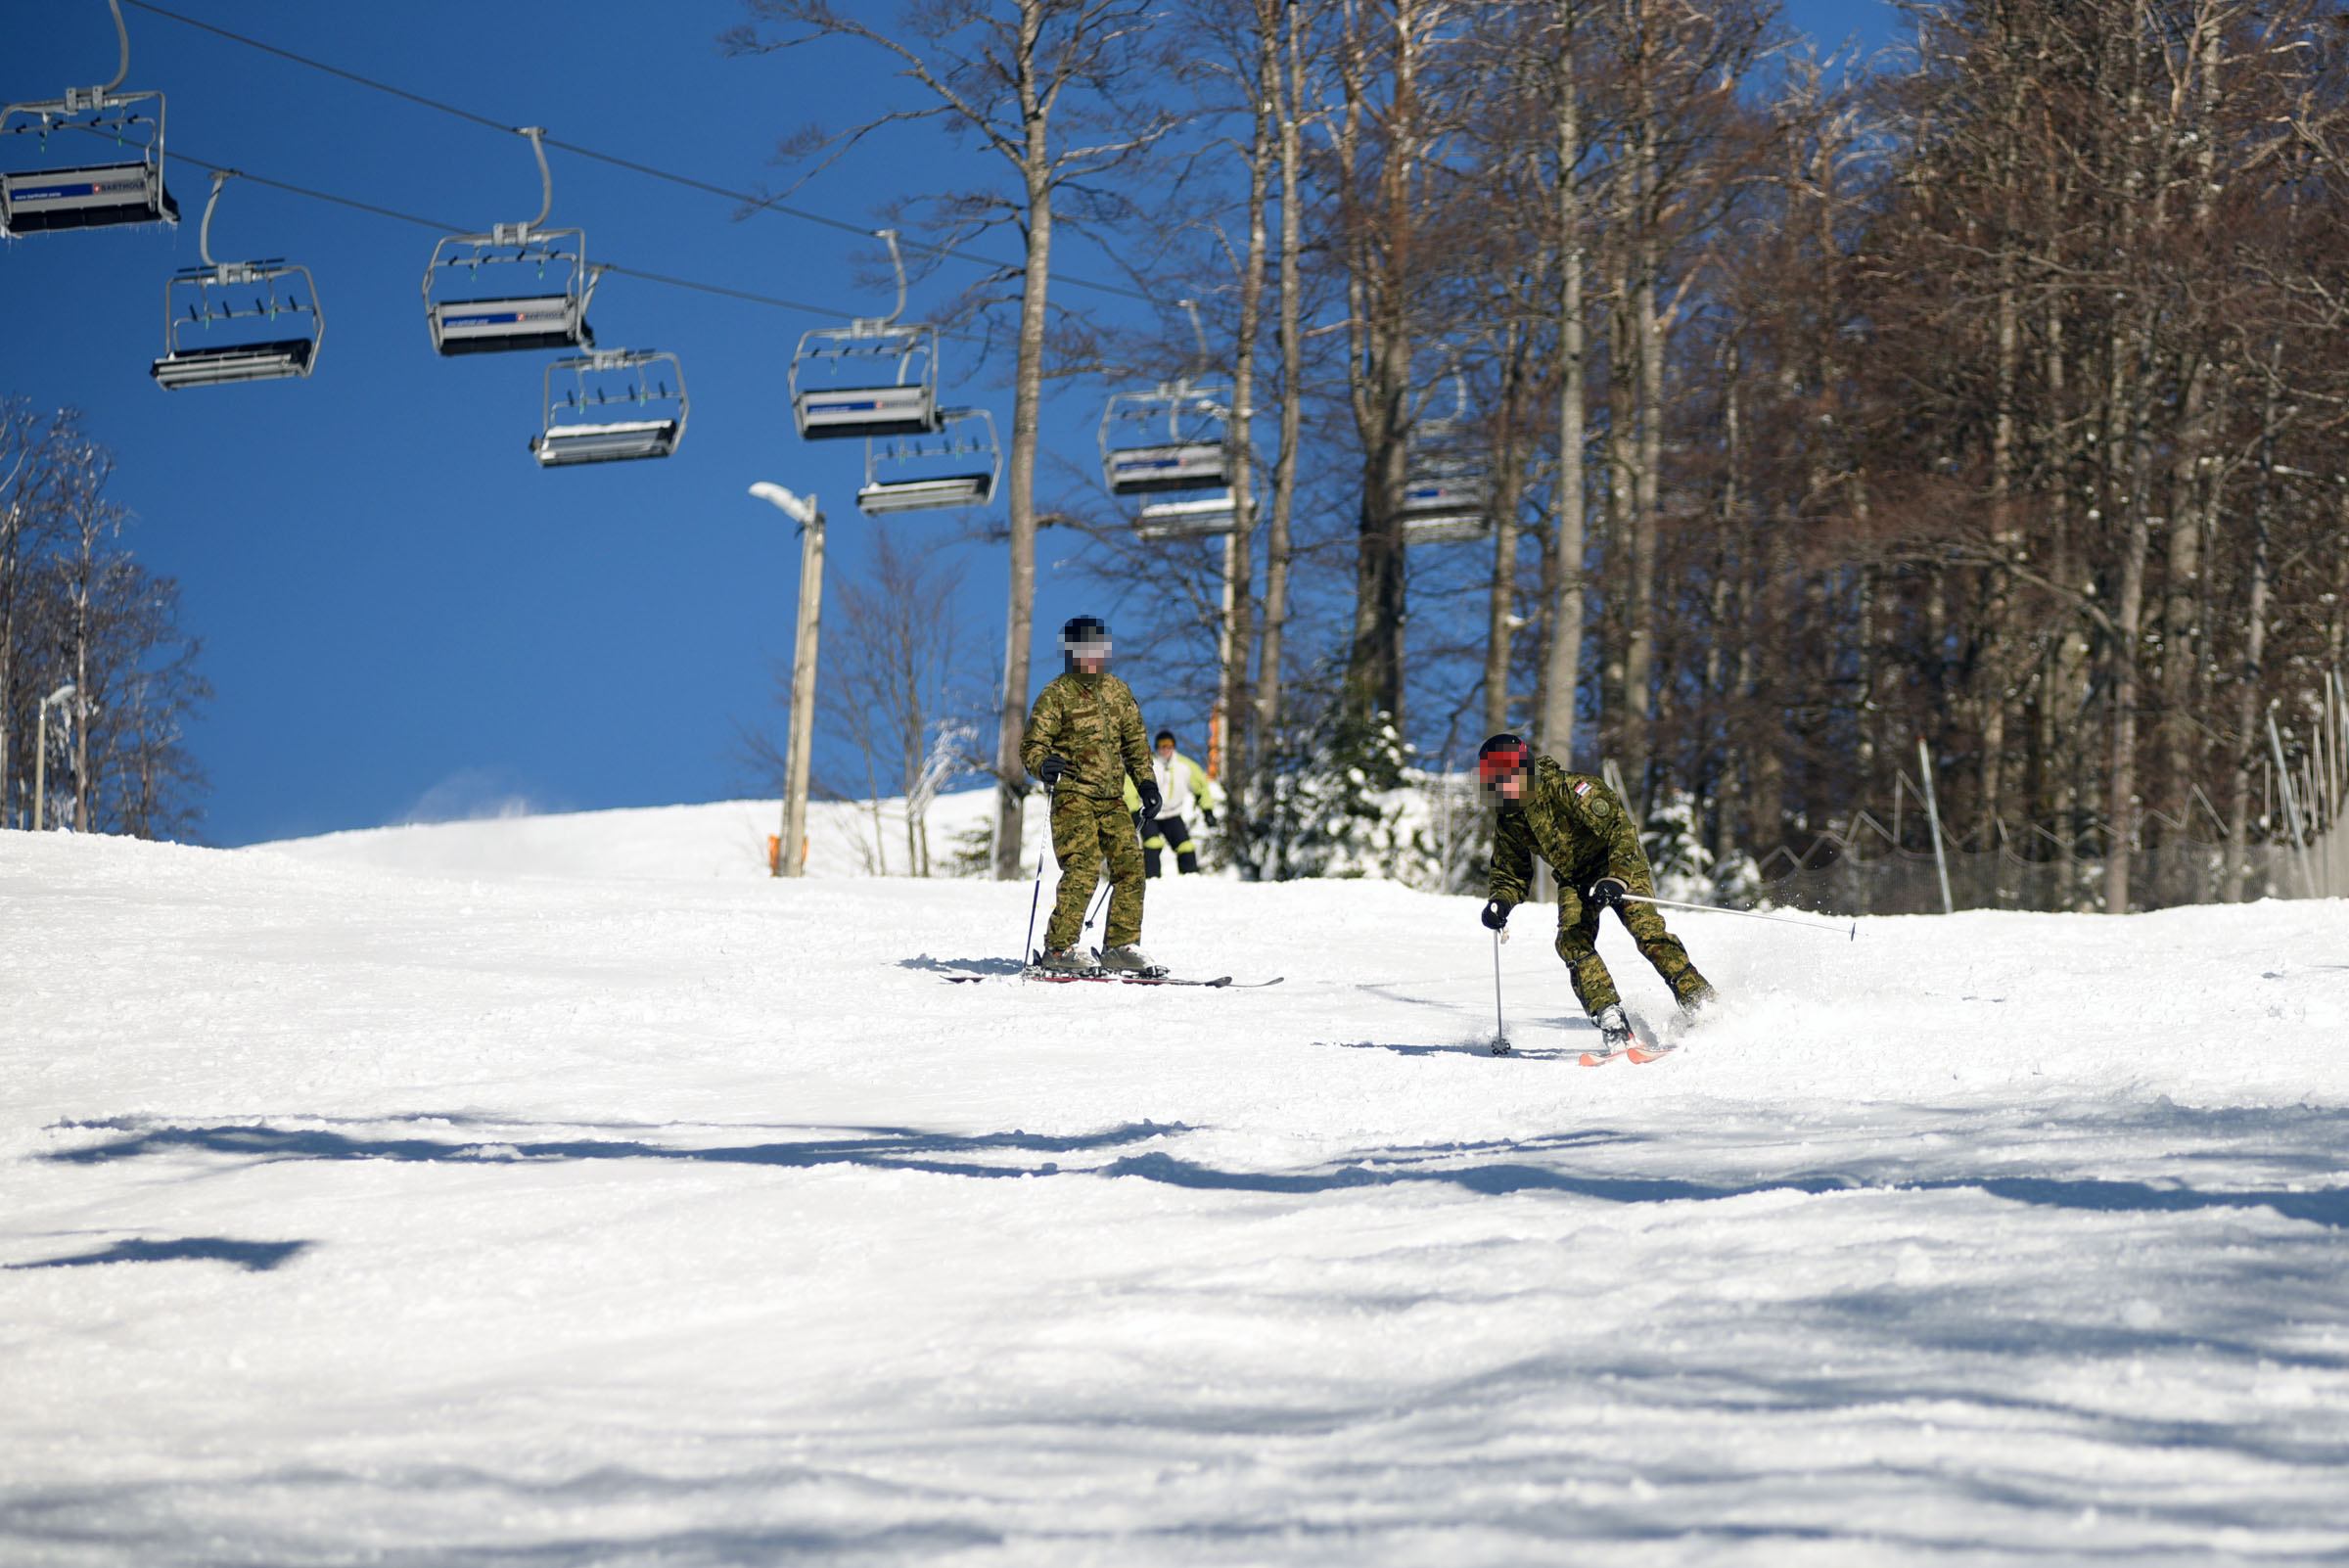 Završena Temeljna obuka skijanja za pripadnike ZSS-a